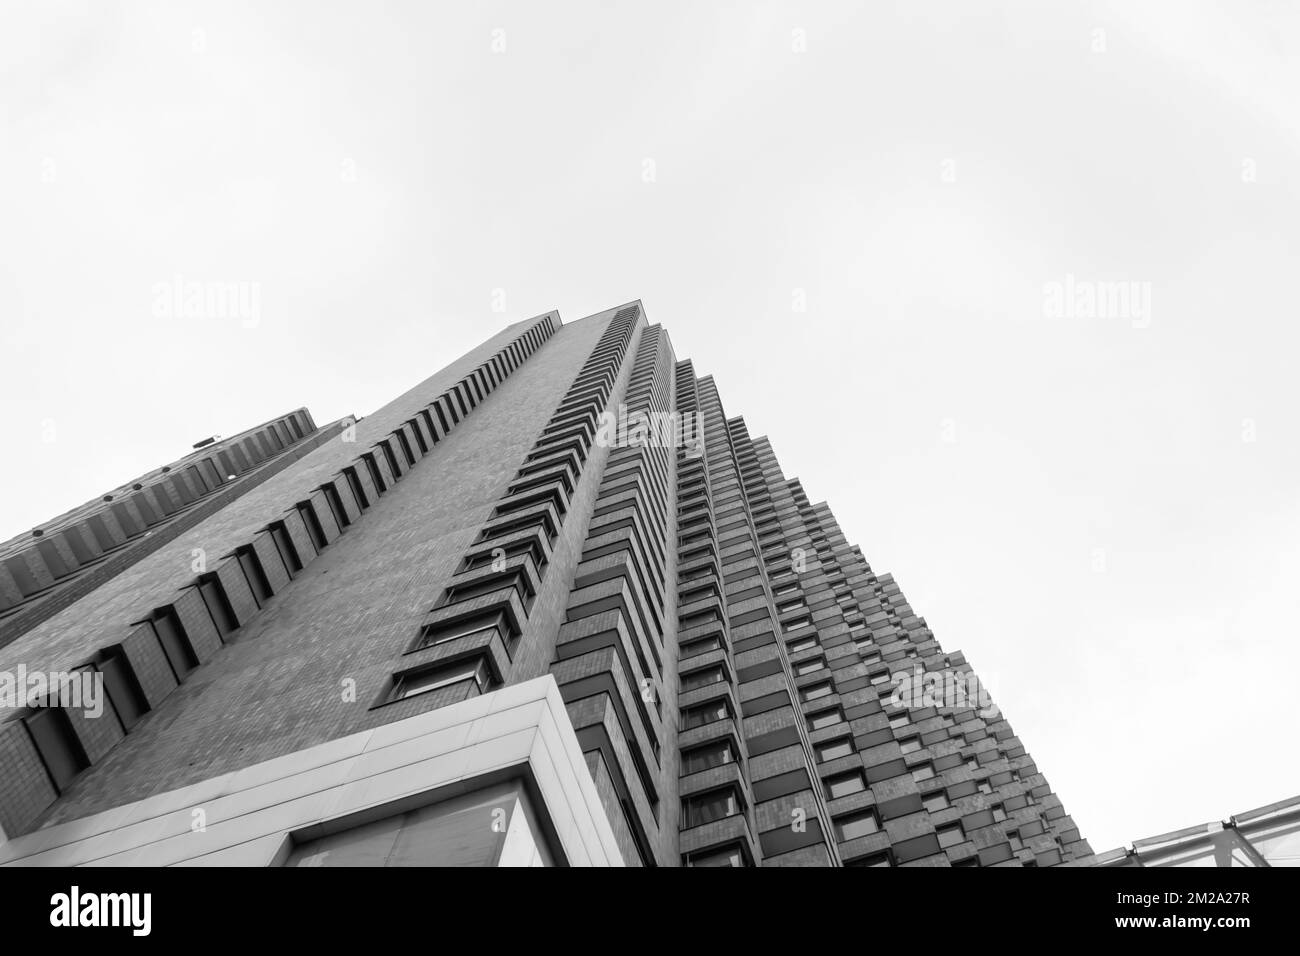 BOGOTA, COLOMBIE - photo en noir et blanc vue à angle bas d'un grand coin de bâtiment en brique symétrique avec ciel nuageux en arrière-plan. Architecture conce Banque D'Images